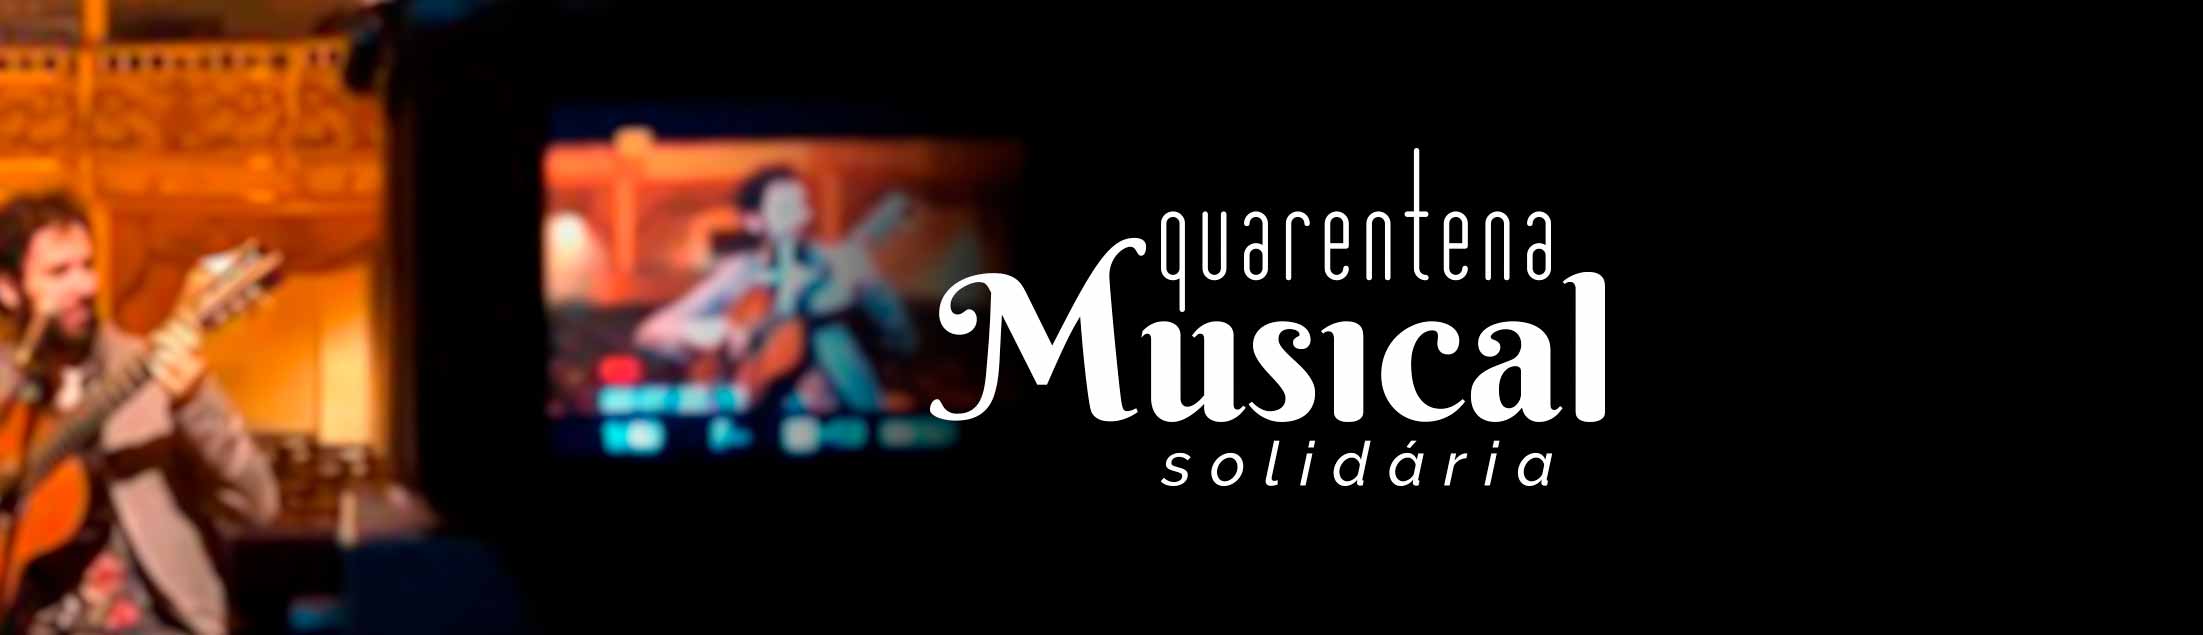 IMMuB lança o projeto ‘Quarentena Musical Solidária’ com a participação de 40 músicos de Niterói